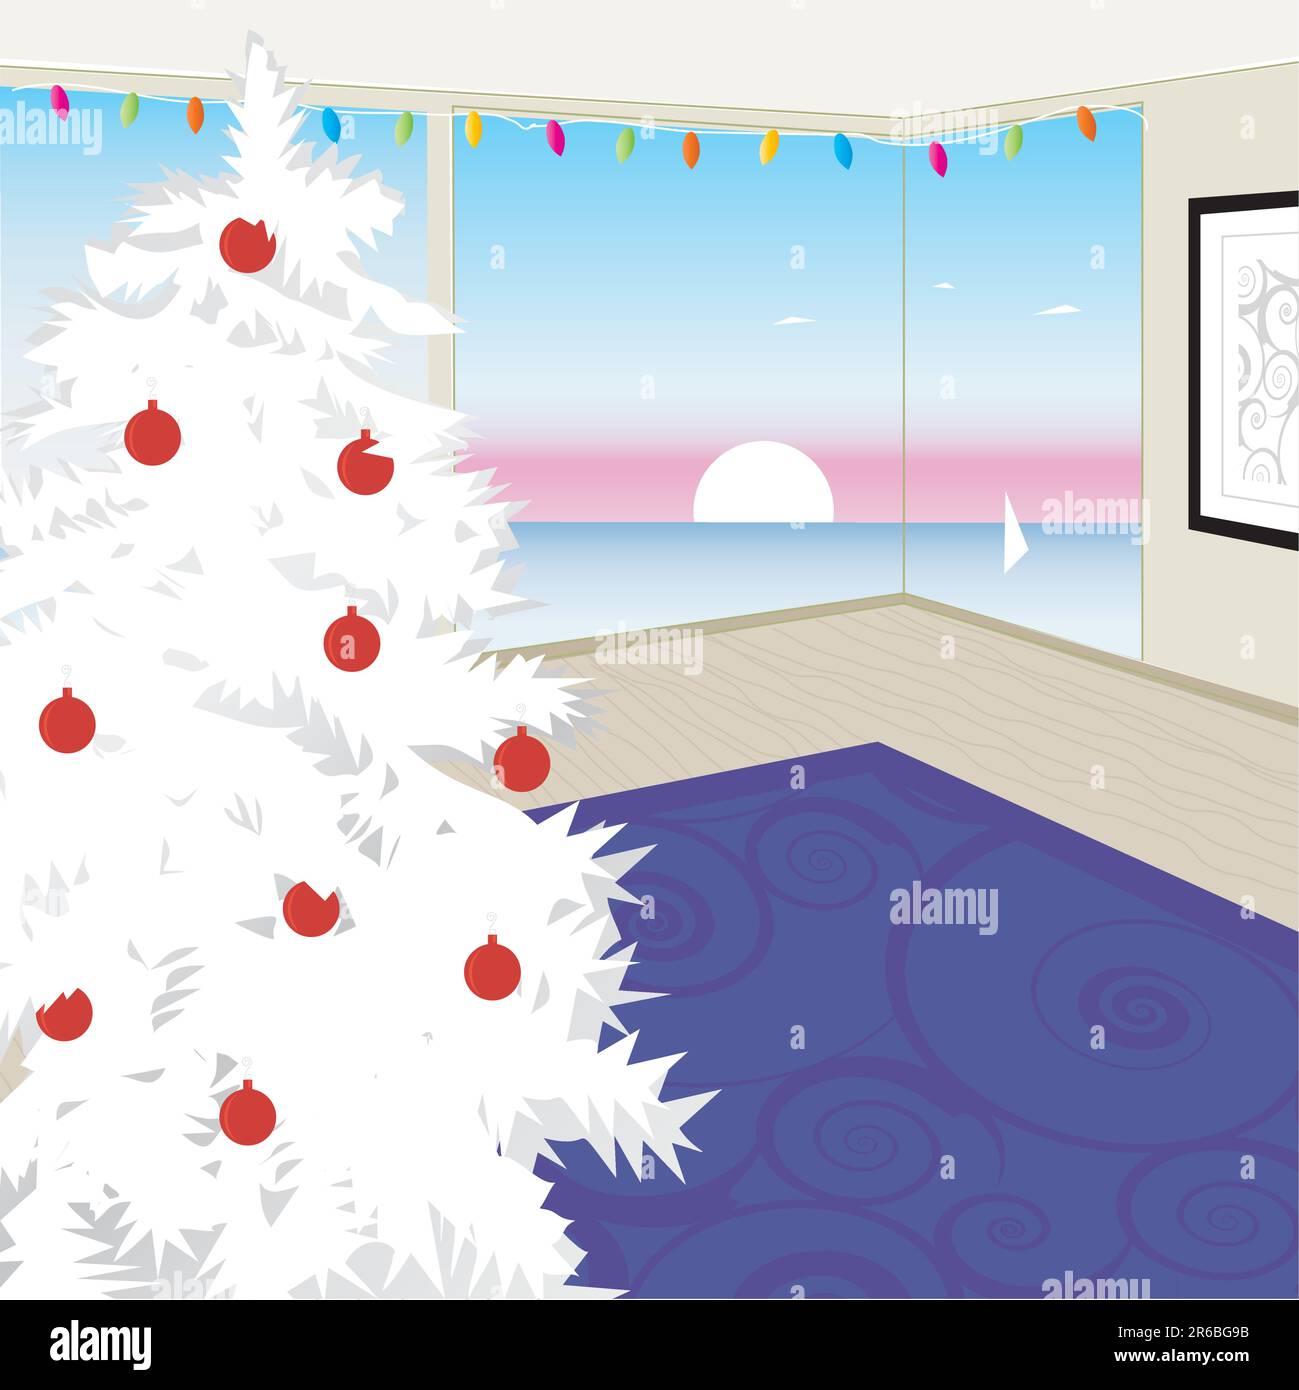 Stilisierter Weißer Weihnachtsbaum Mit Blick Auf Den Sonnenuntergang An Der Westküste. Weihnachten in Kalifornien modernes Haus. Flexible, einfach zu bearbeitende Datei Stock Vektor